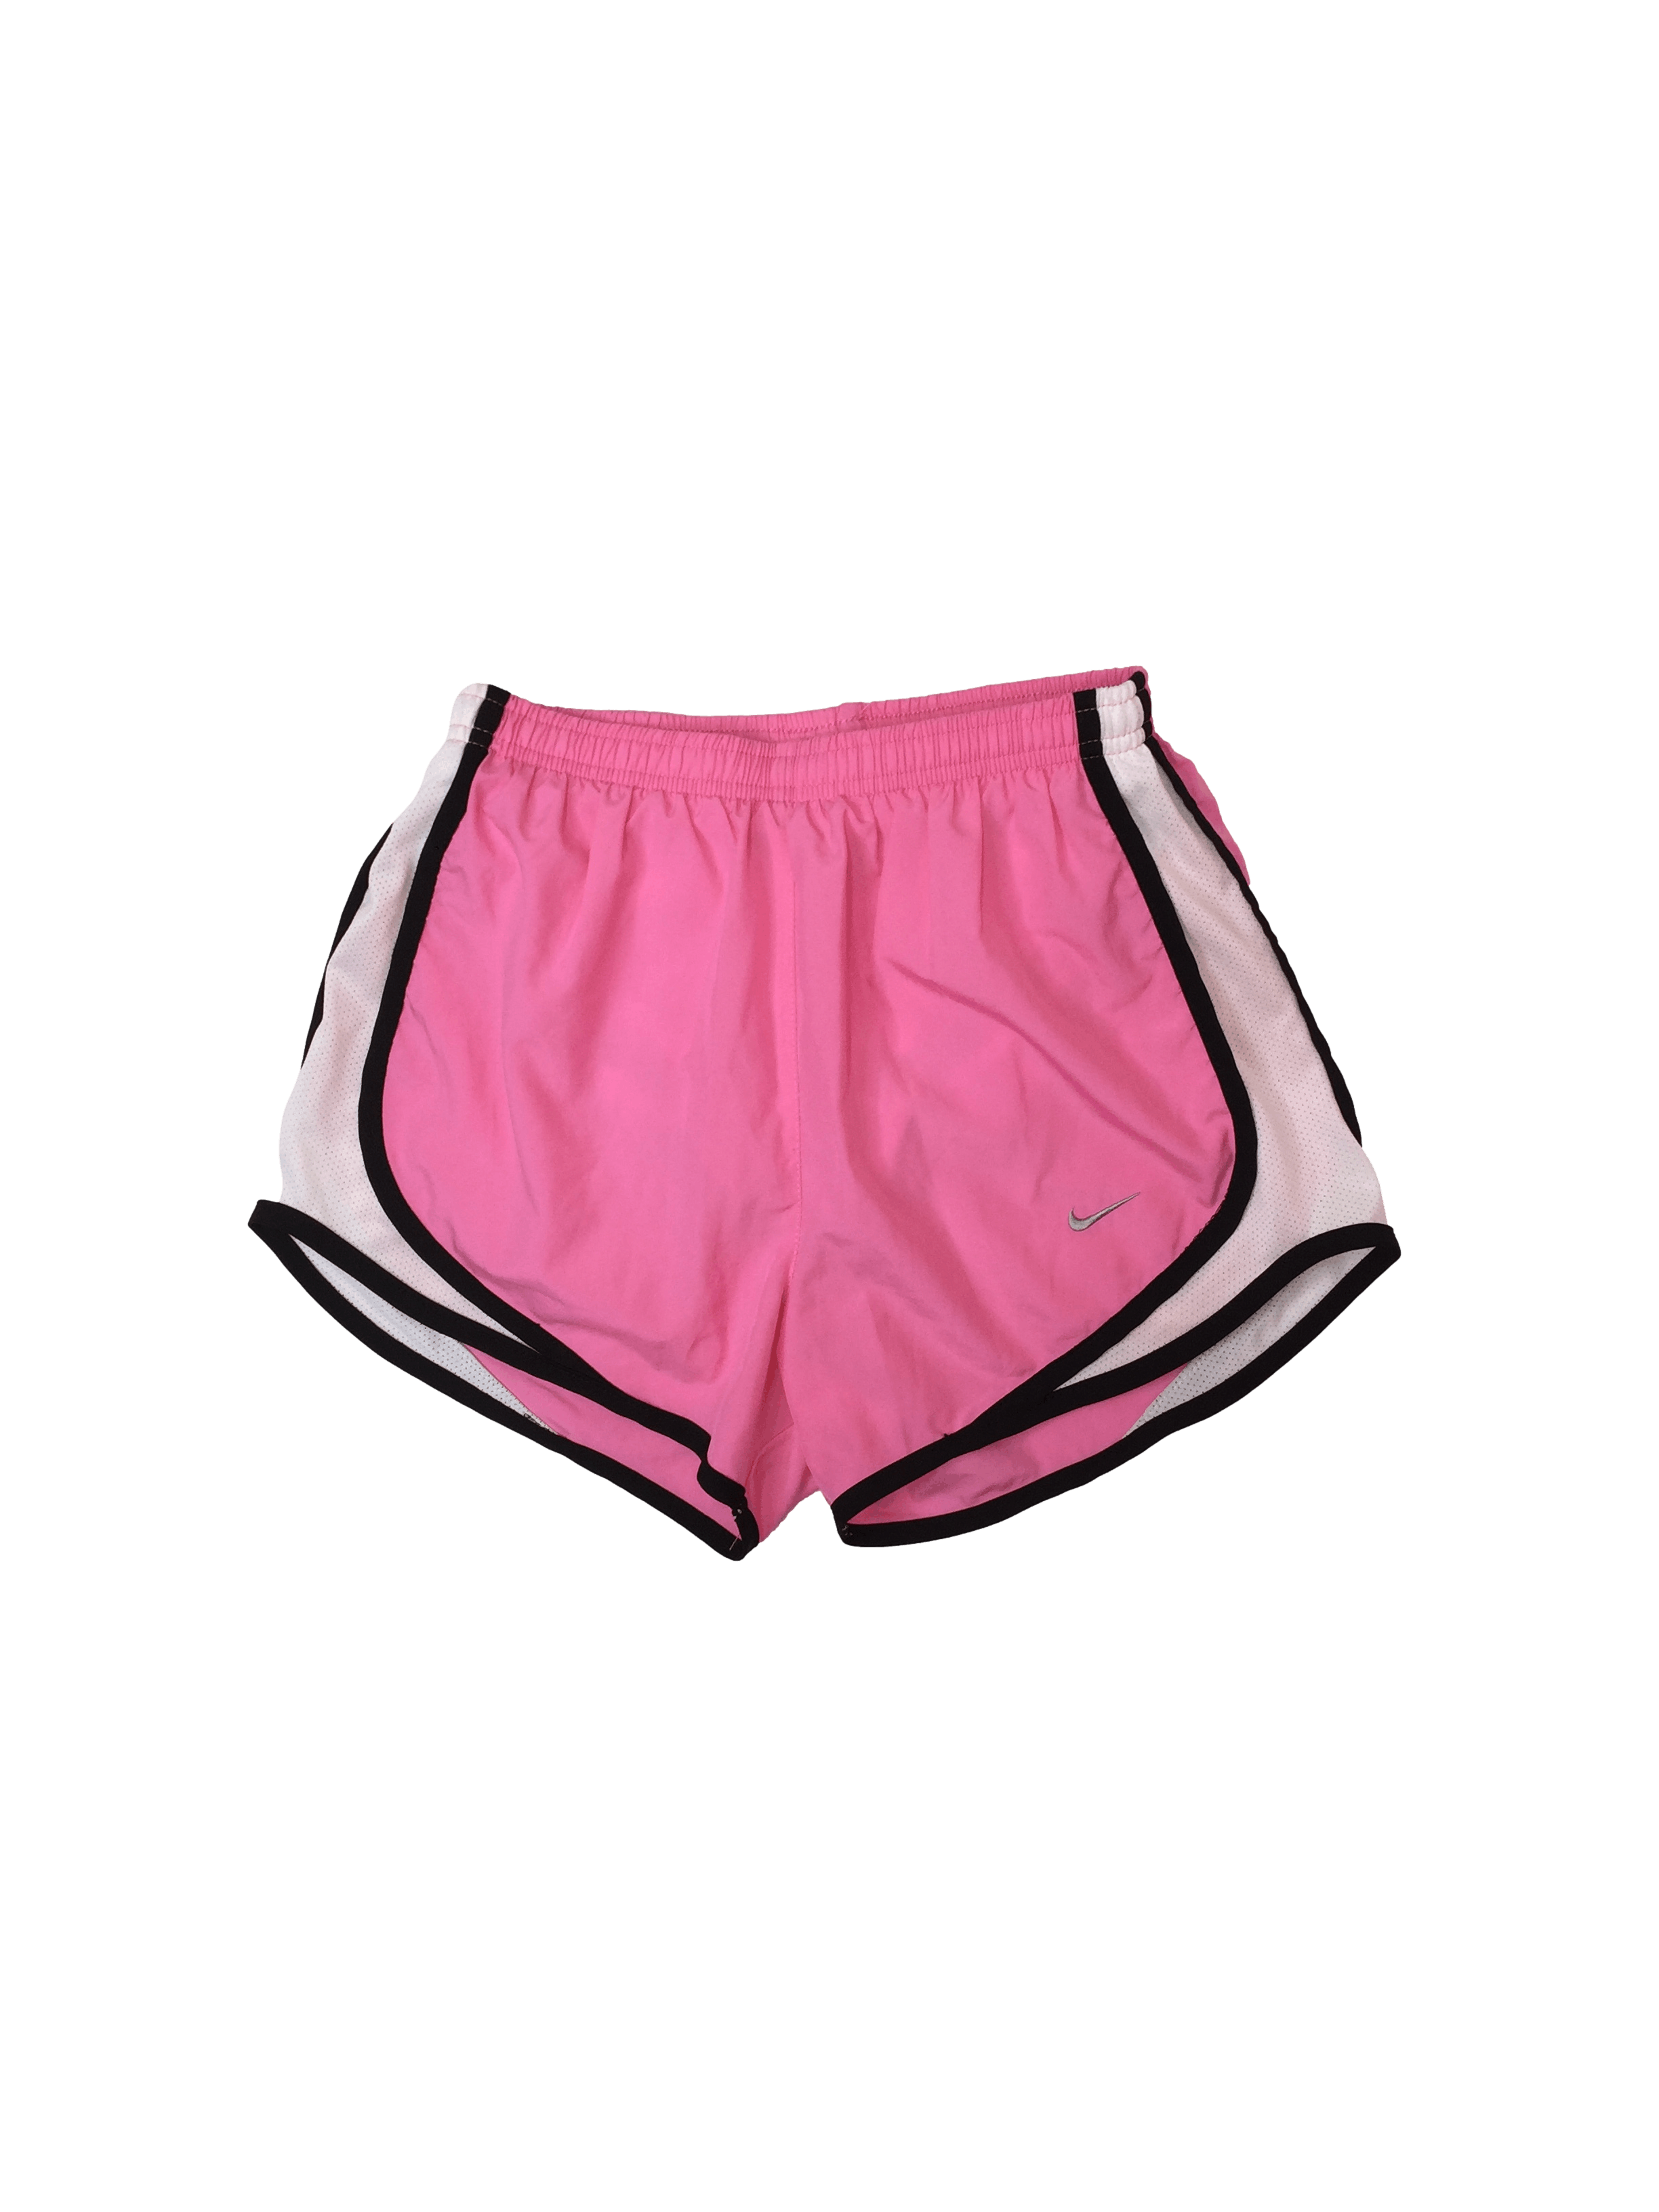 Short deportivo Nike rosado con franjas blancas y negras cintura elástico 60cm sin estirar, largo tiro 58cm.